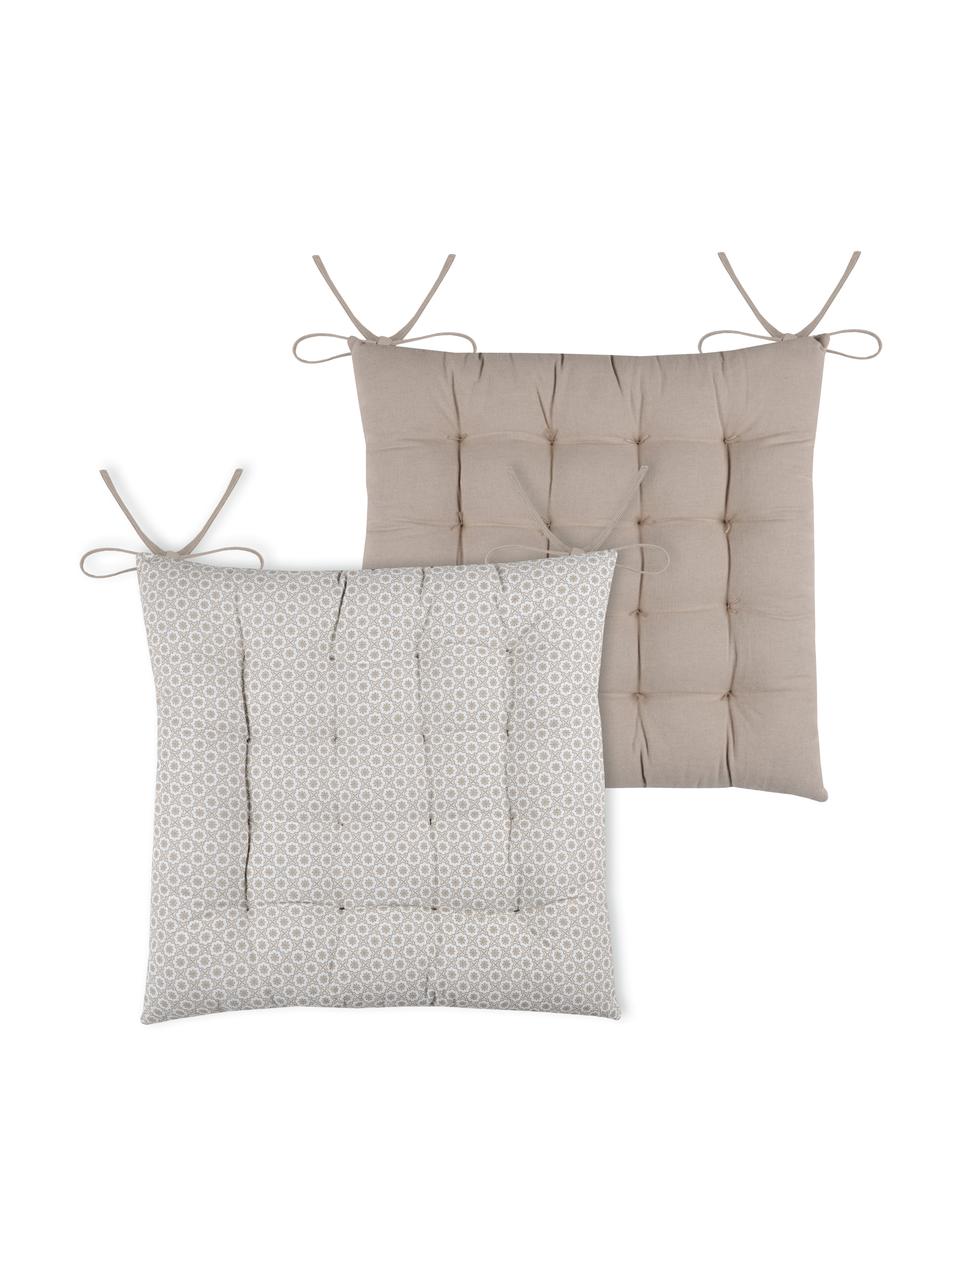 Dwustronna poduszka na krzesło Galette, 100% bawełna, Beżowy, biały, S 40 x D 40 cm